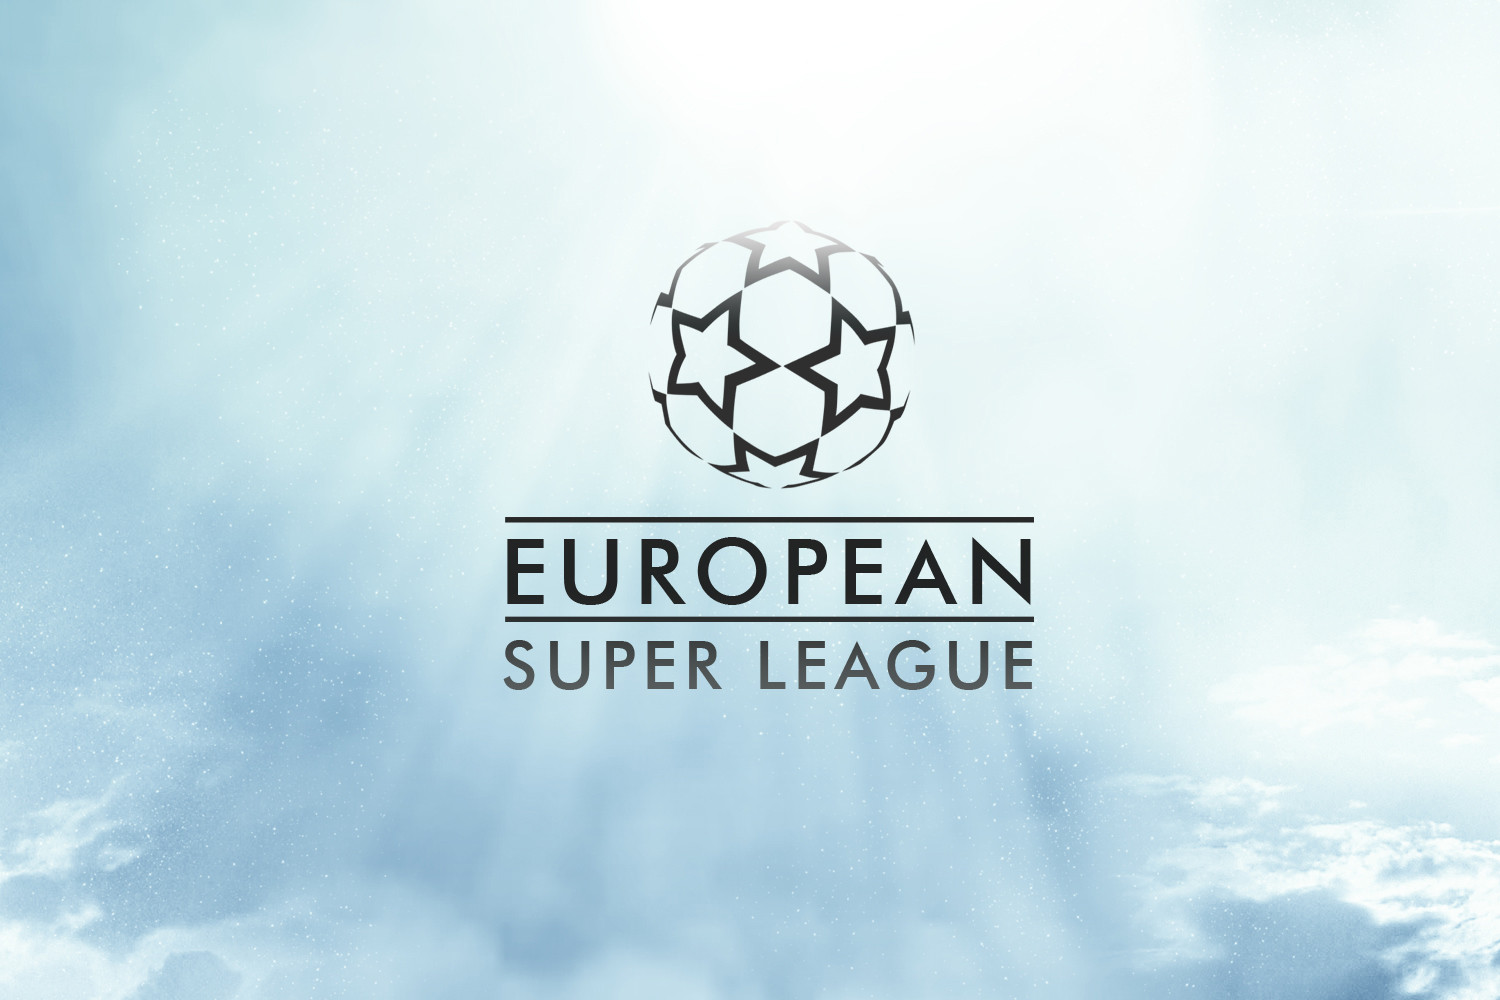 Δικαστική απόφαση δικαιώνει την European Super League